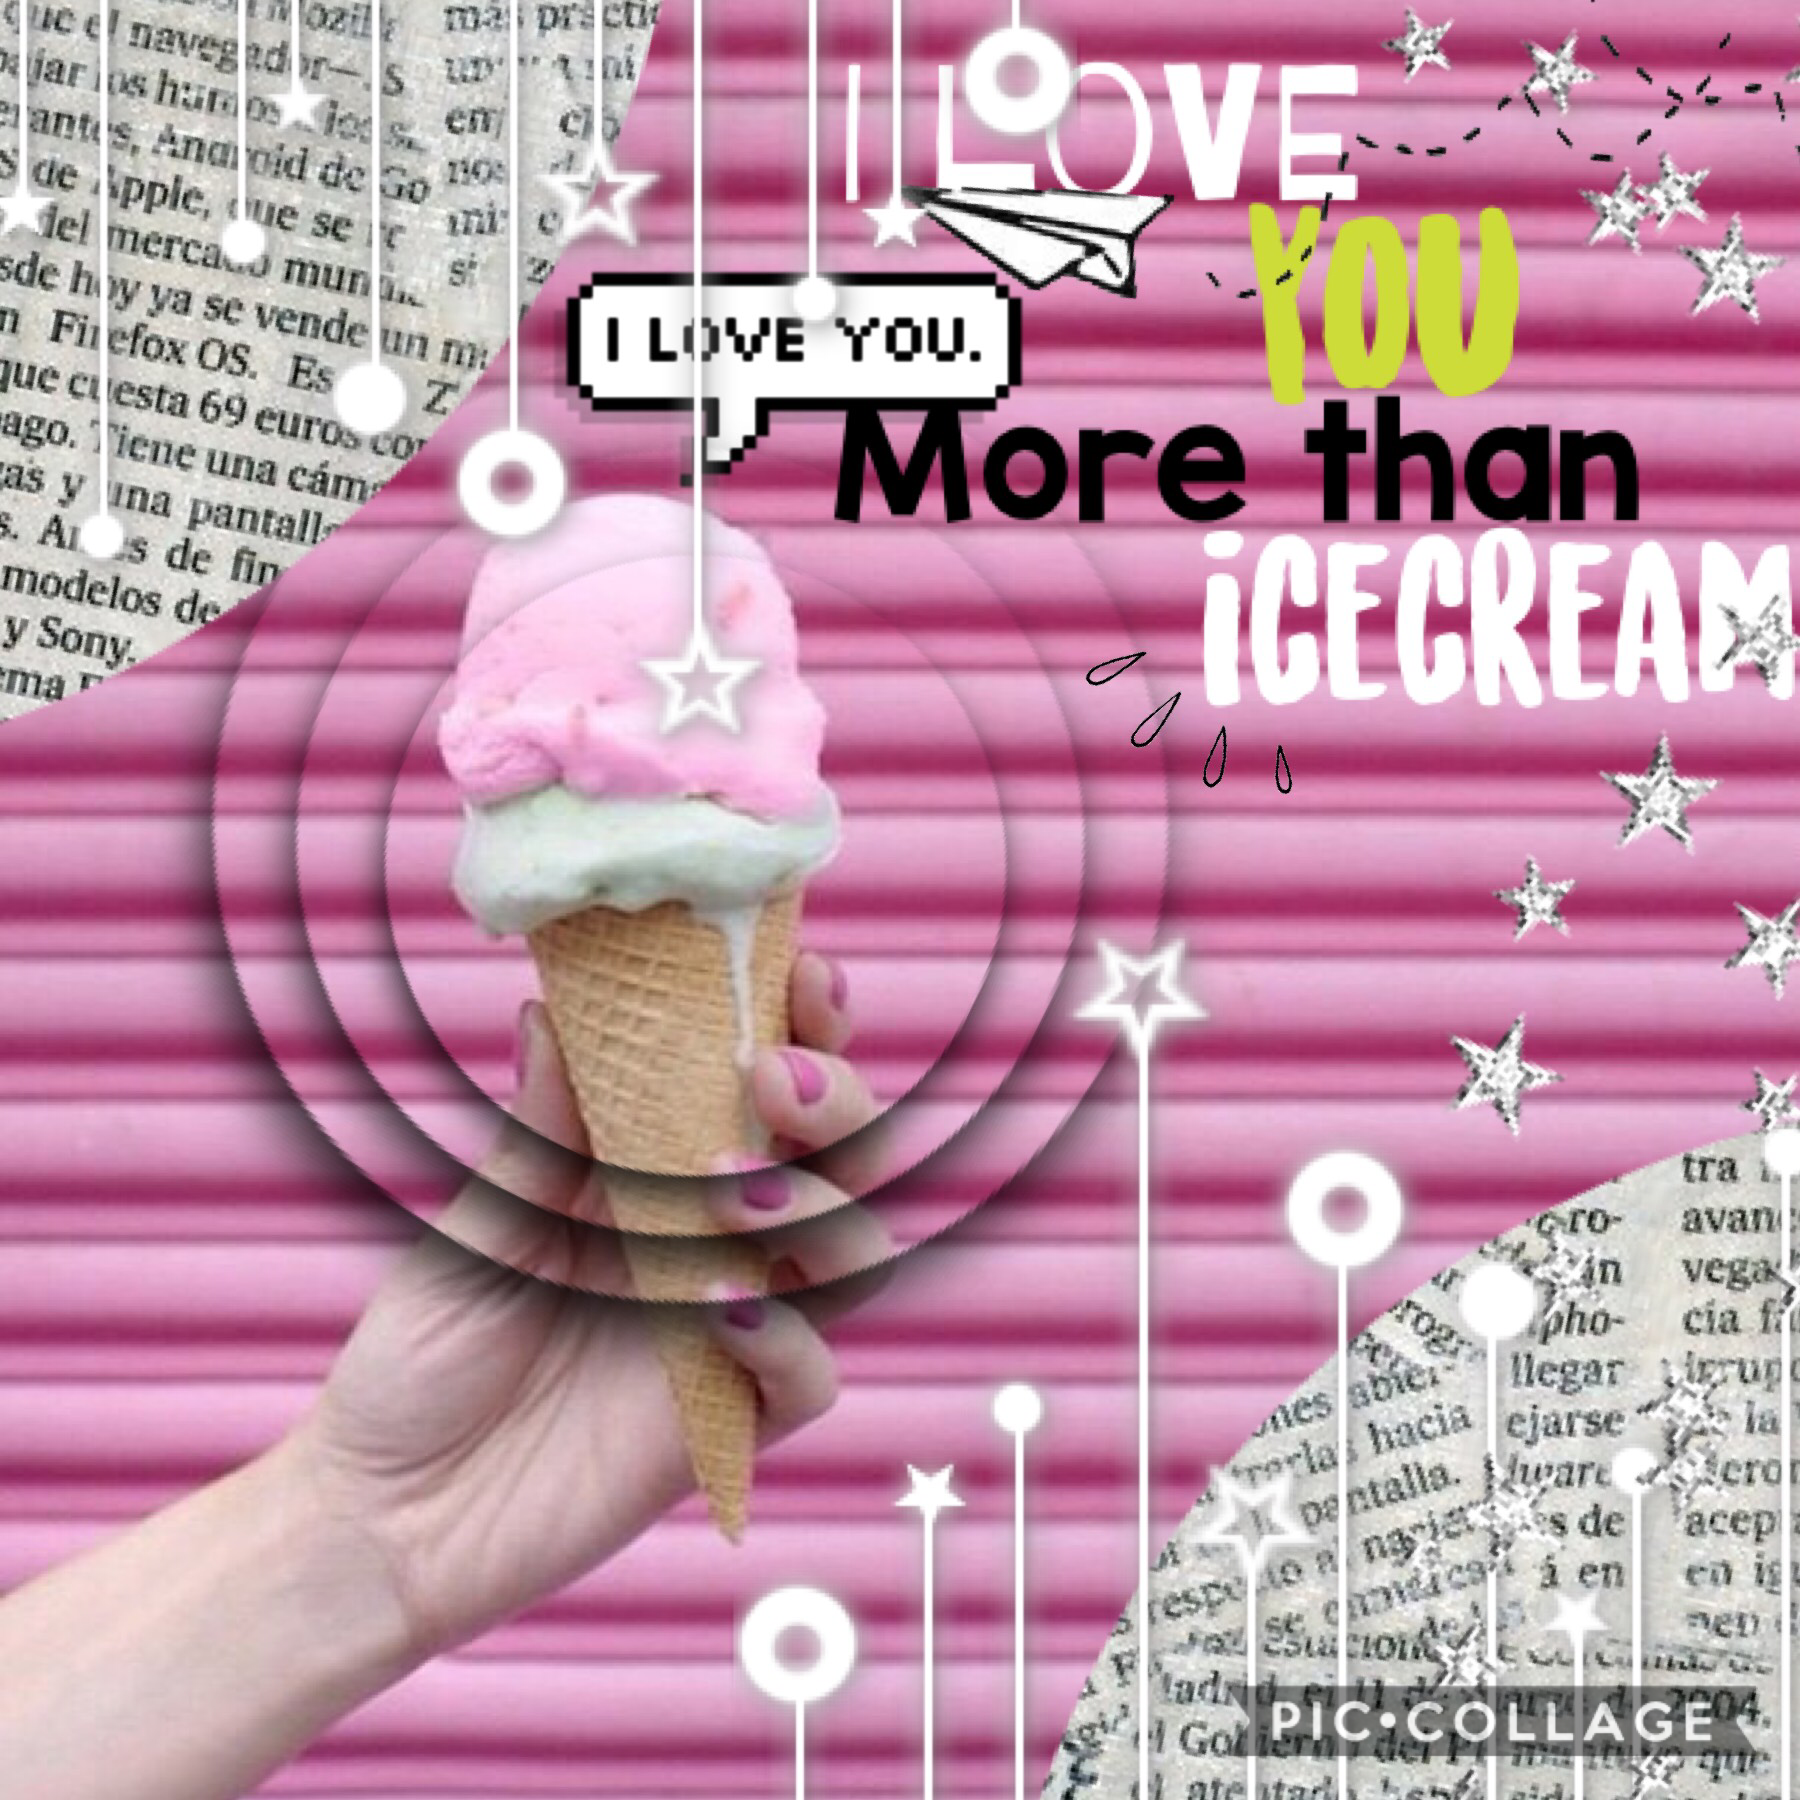 I love you more than.......



